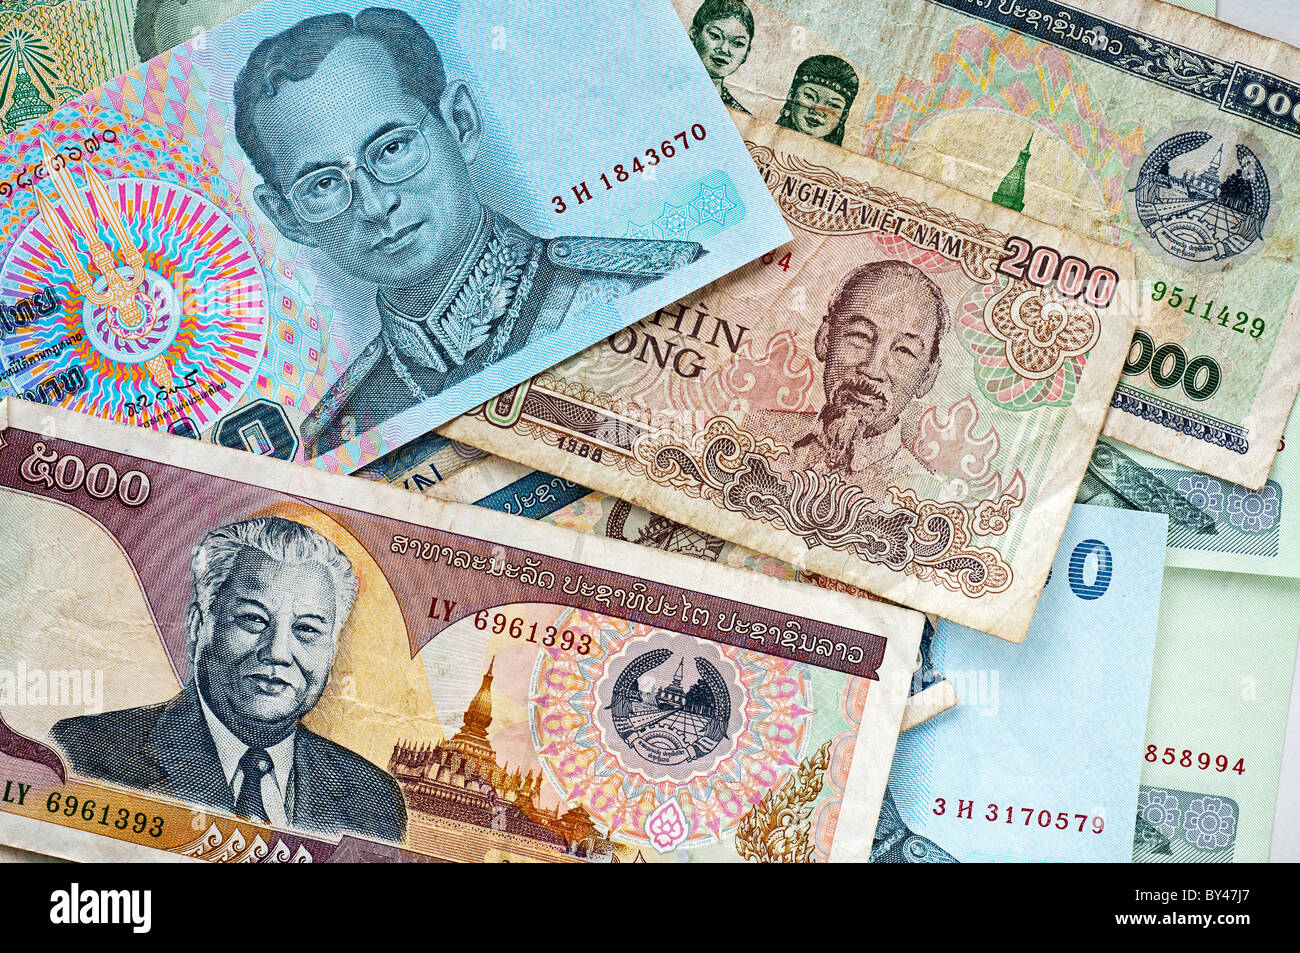 Foto von mehreren Währungen aus Südost-Asien, Thai Baht, Lao Kip und Vietnamesische Dong. Stockfoto